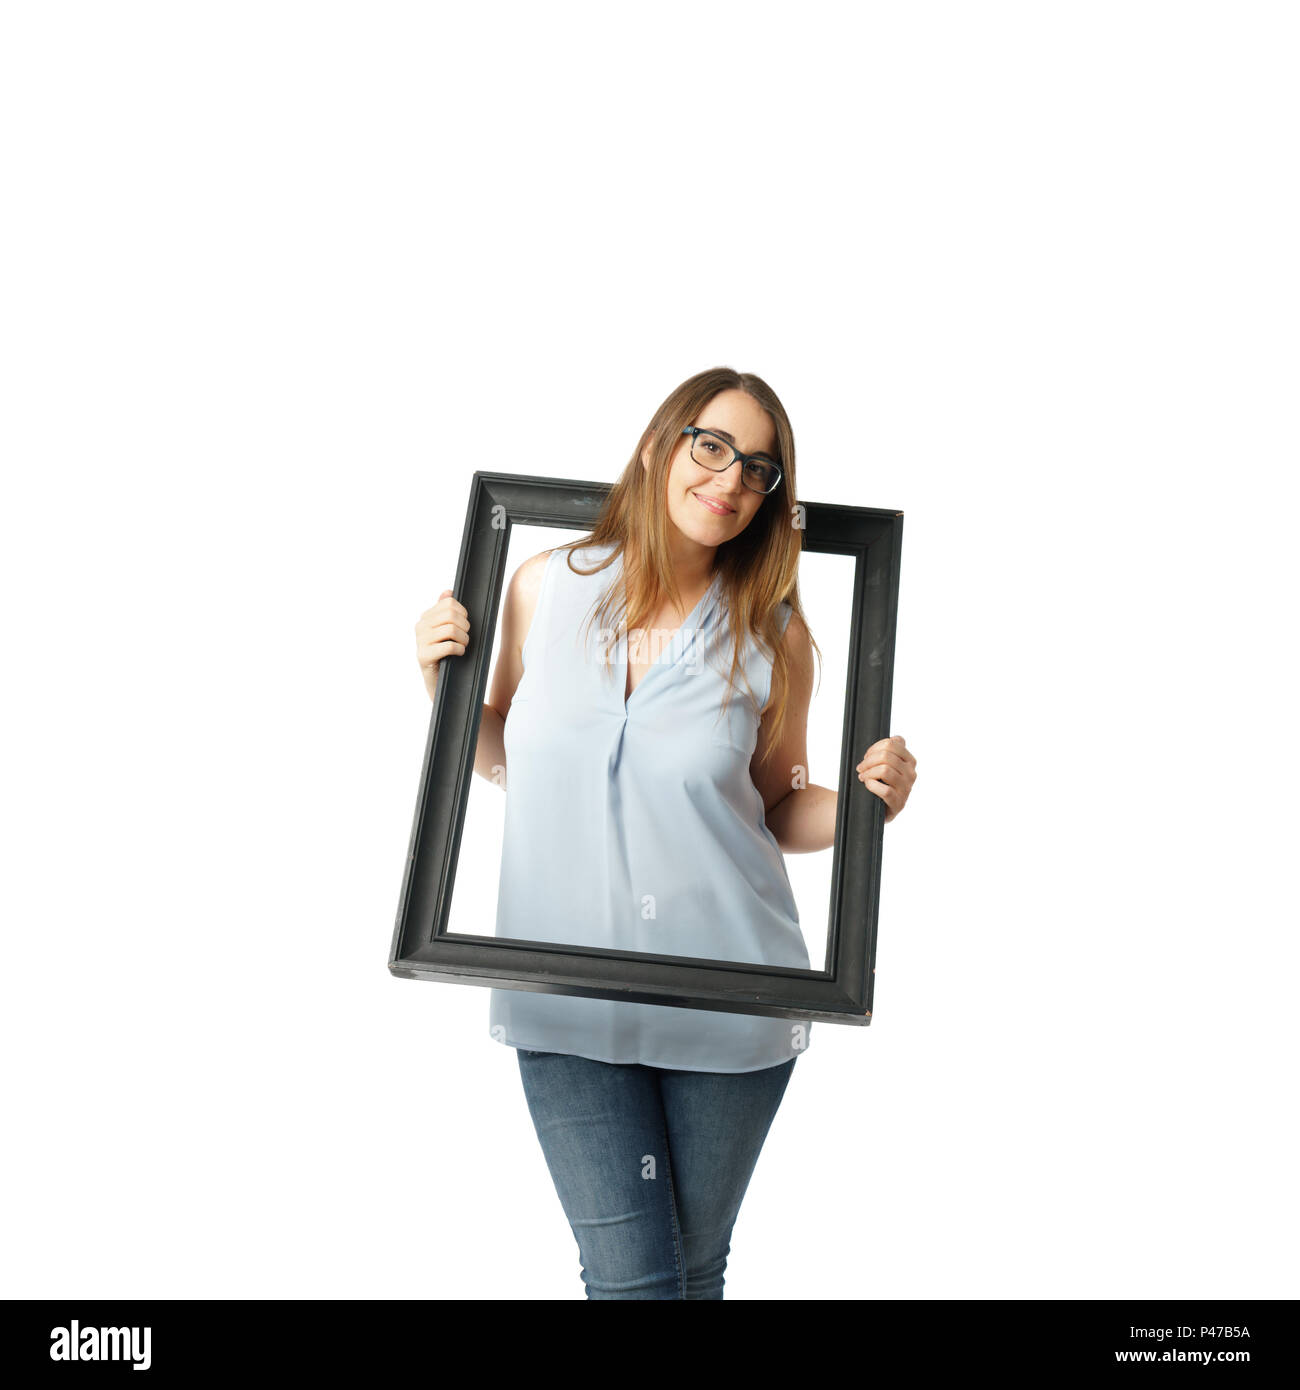 Femme avec des lunettes sort du cadre Photo Stock - Alamy